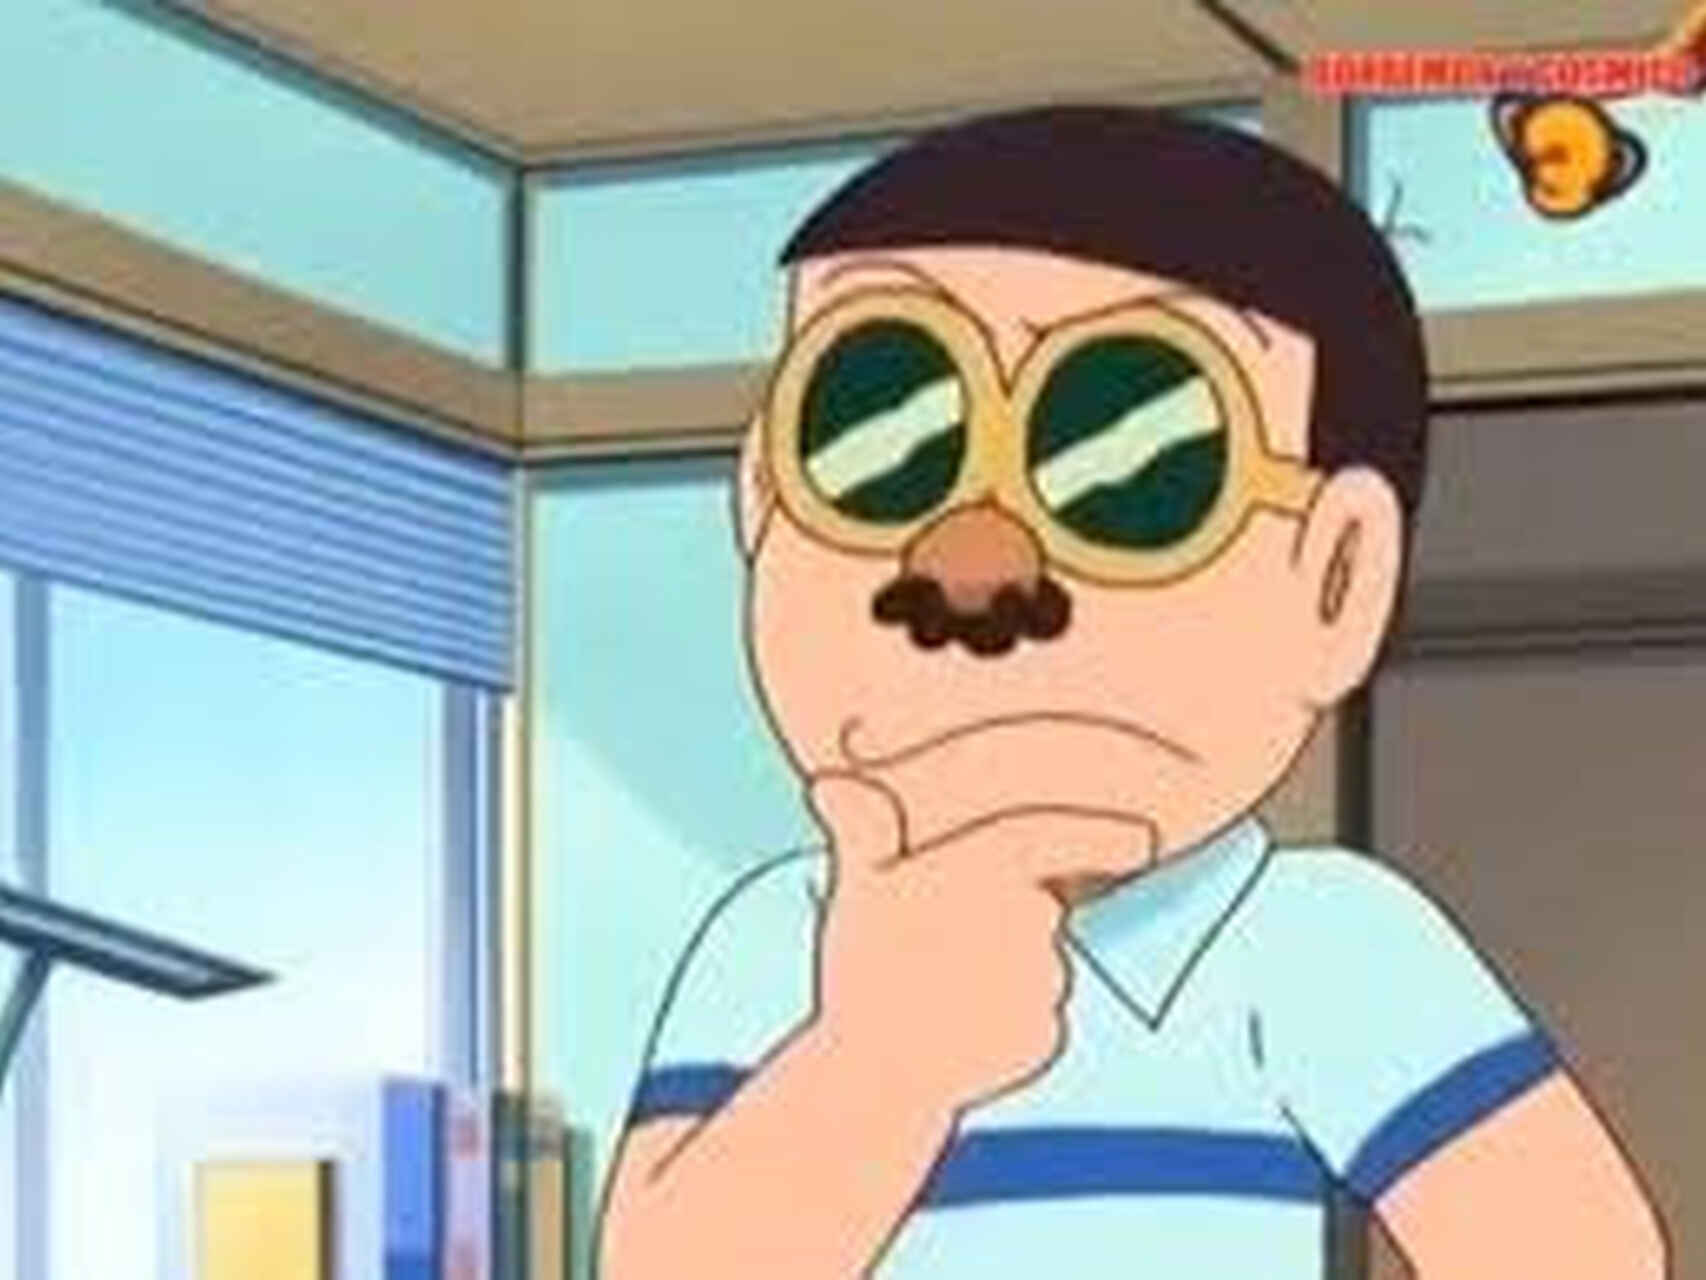 Imaginan a Nobita, en alusión a Bartomeu, disfrazándose para pasar desapercibido.